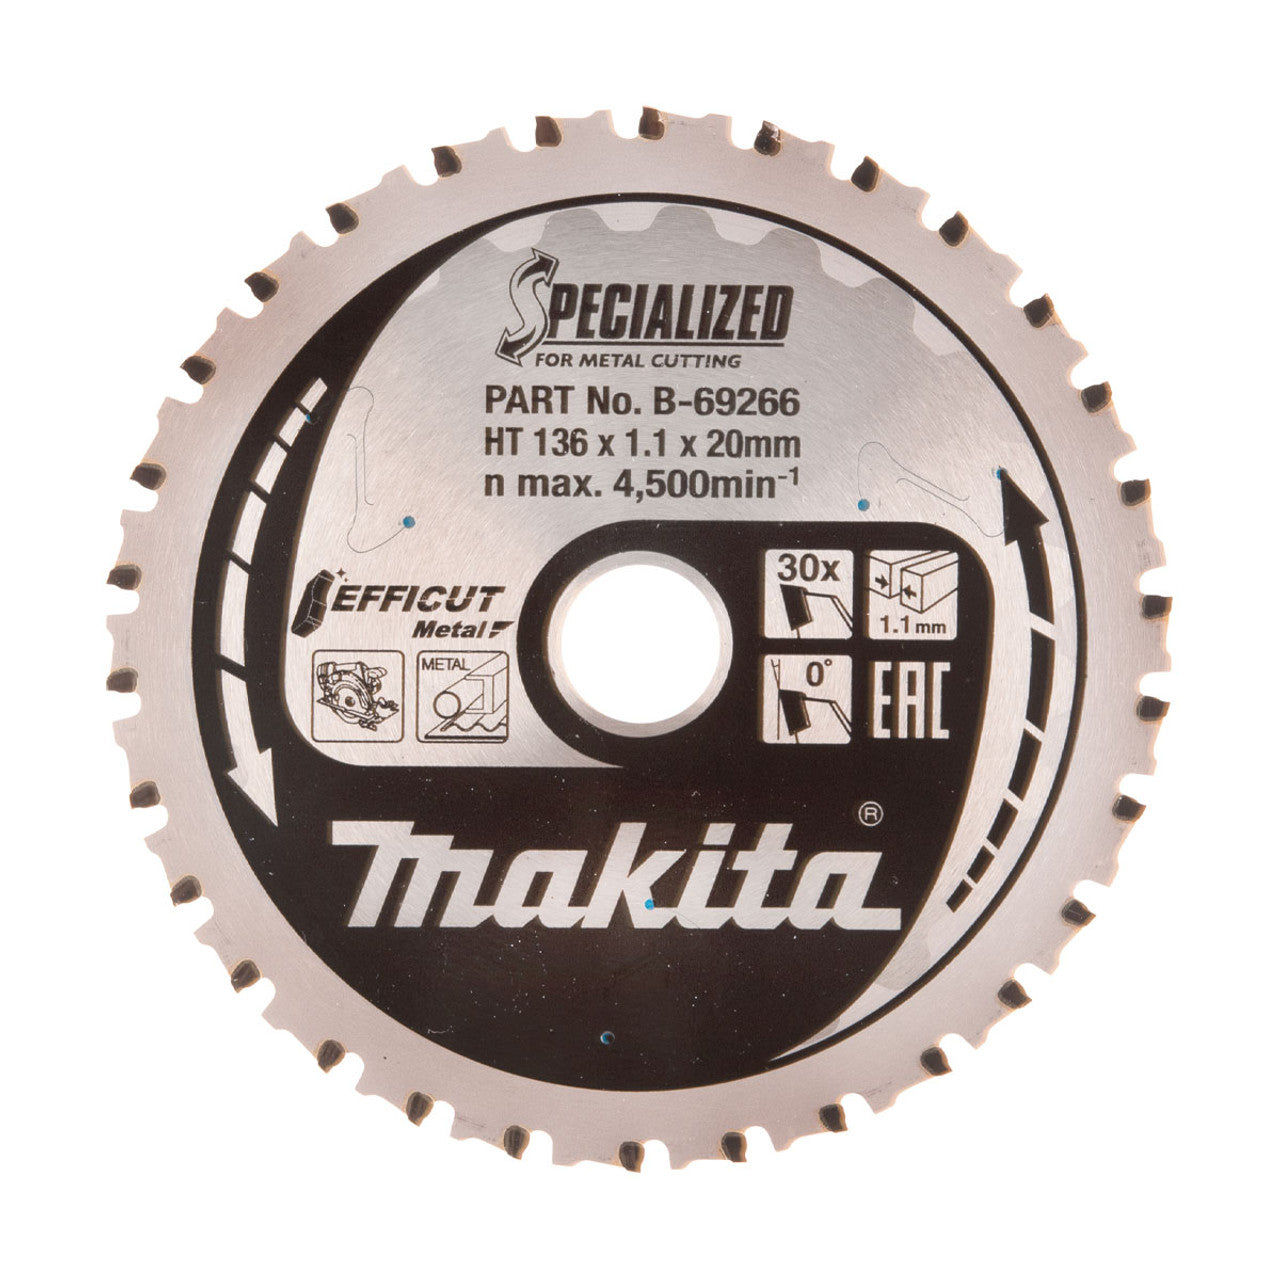 Makita B-69266 Efficut TCT Metal Cutting Circular Saw Blade (136mmx20mmx30T) (J)